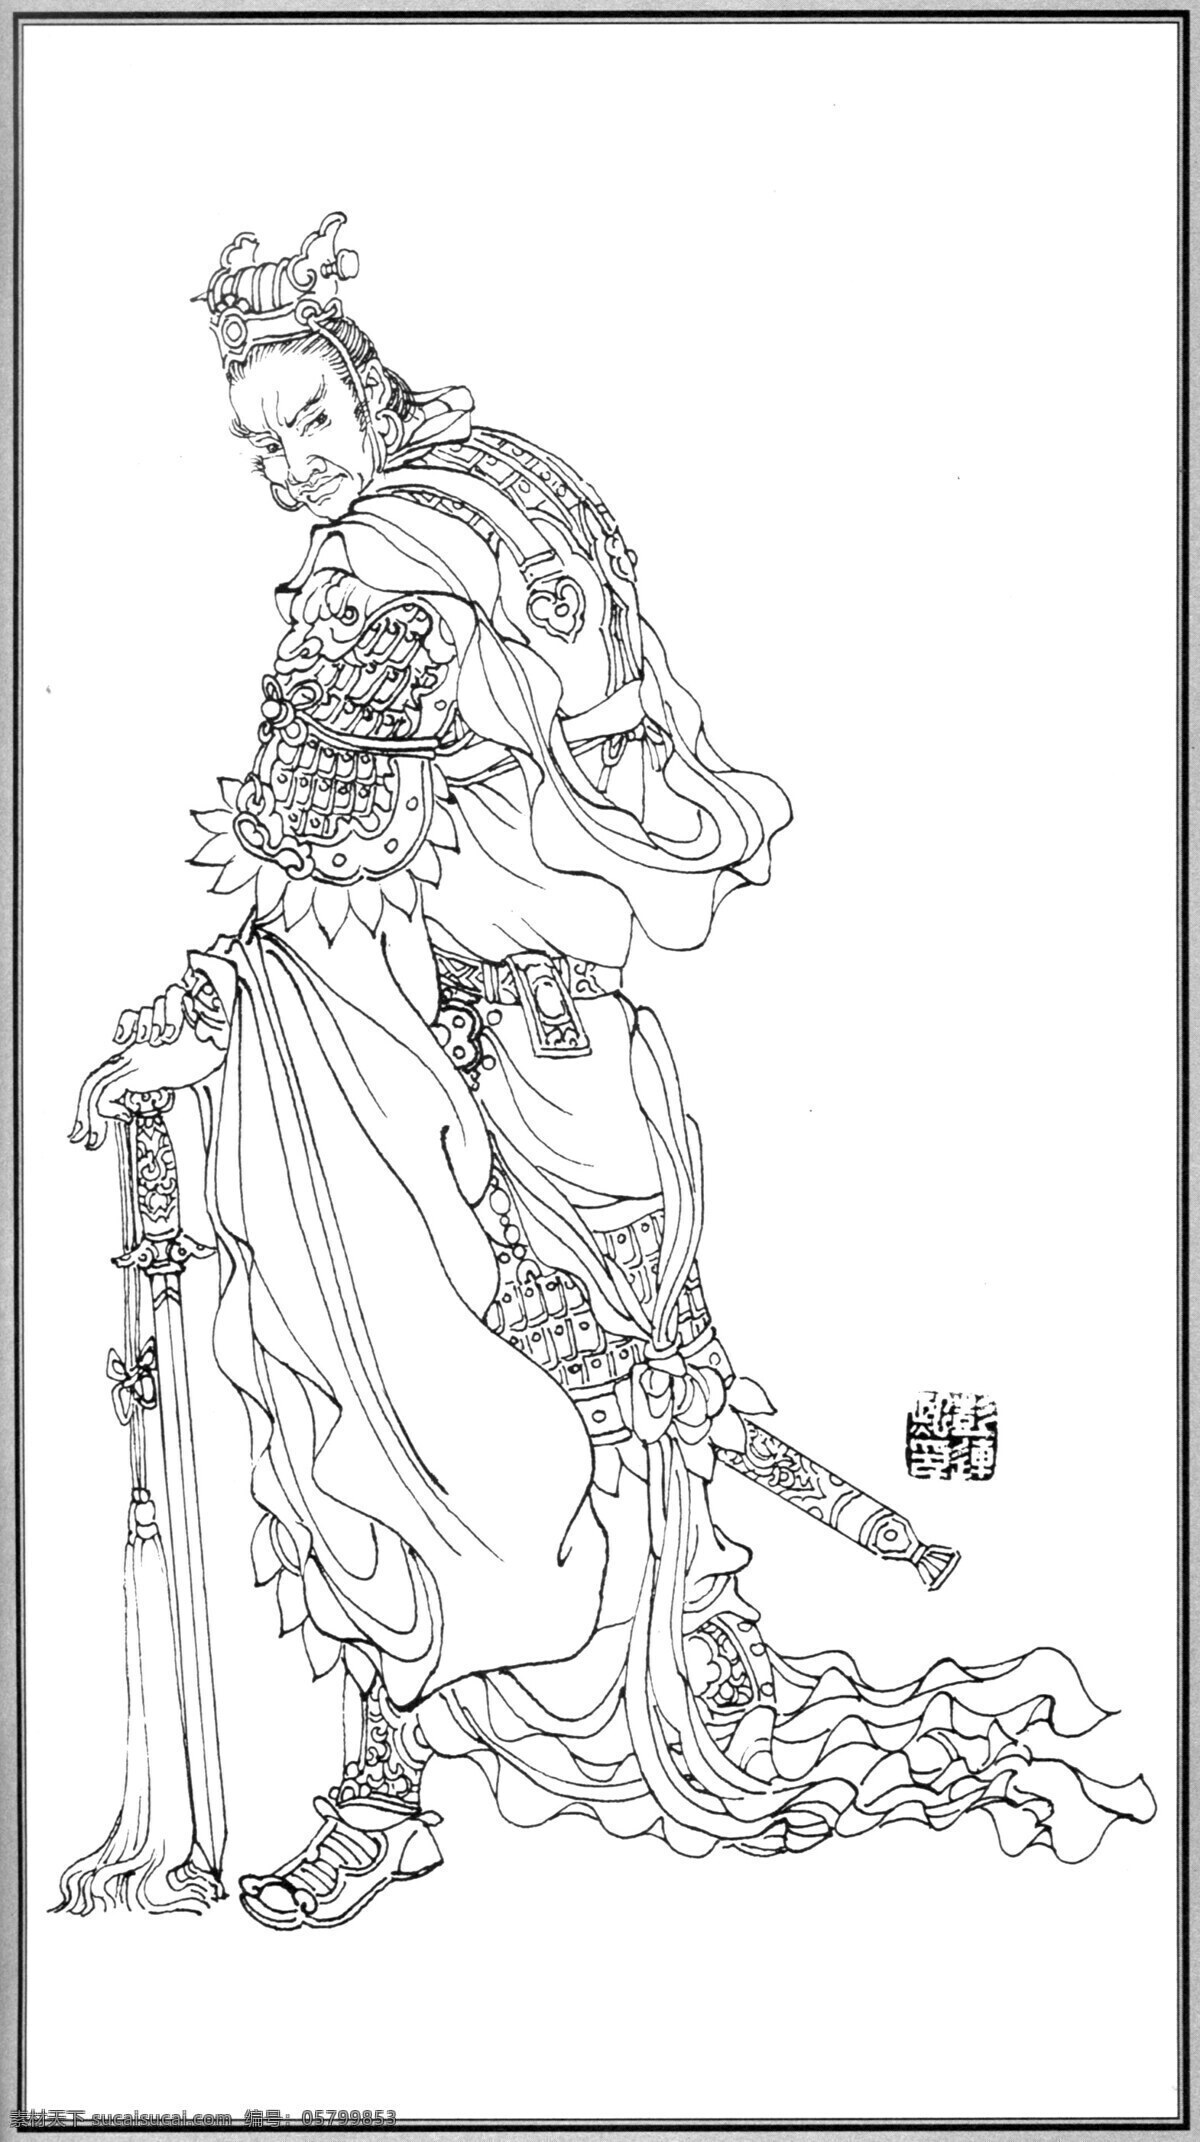 中国 神话 人物 井 木 犴 老子 彭连熙 线描 扫描 文化艺术 绘画书法 设计图库